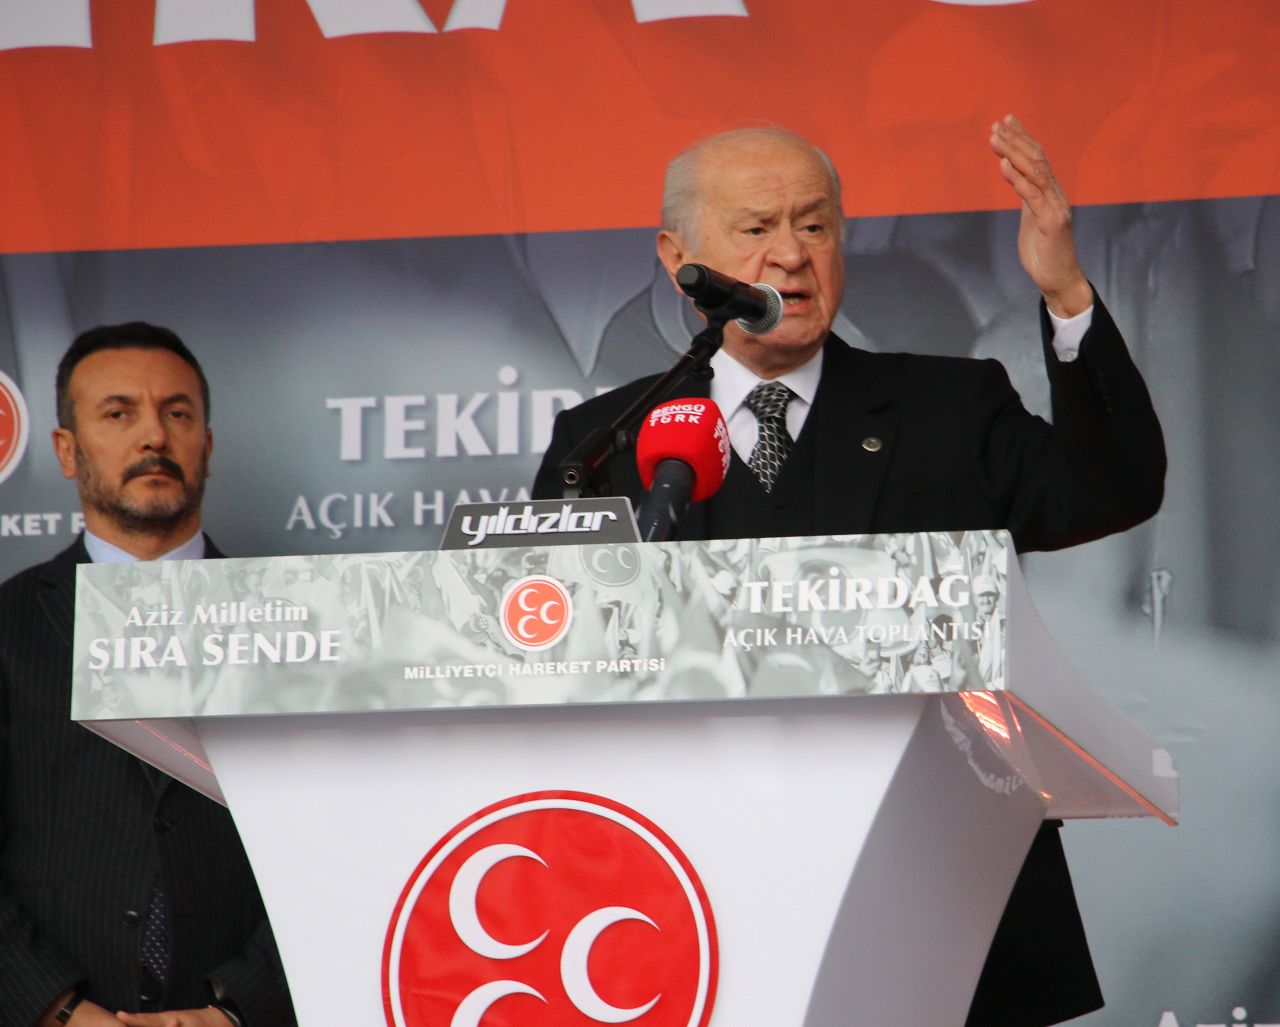 MHP Lideri Devlet Bahçeli: “Onlar aferini batıda bekleye dursun bize Türk milleti yetecektir”